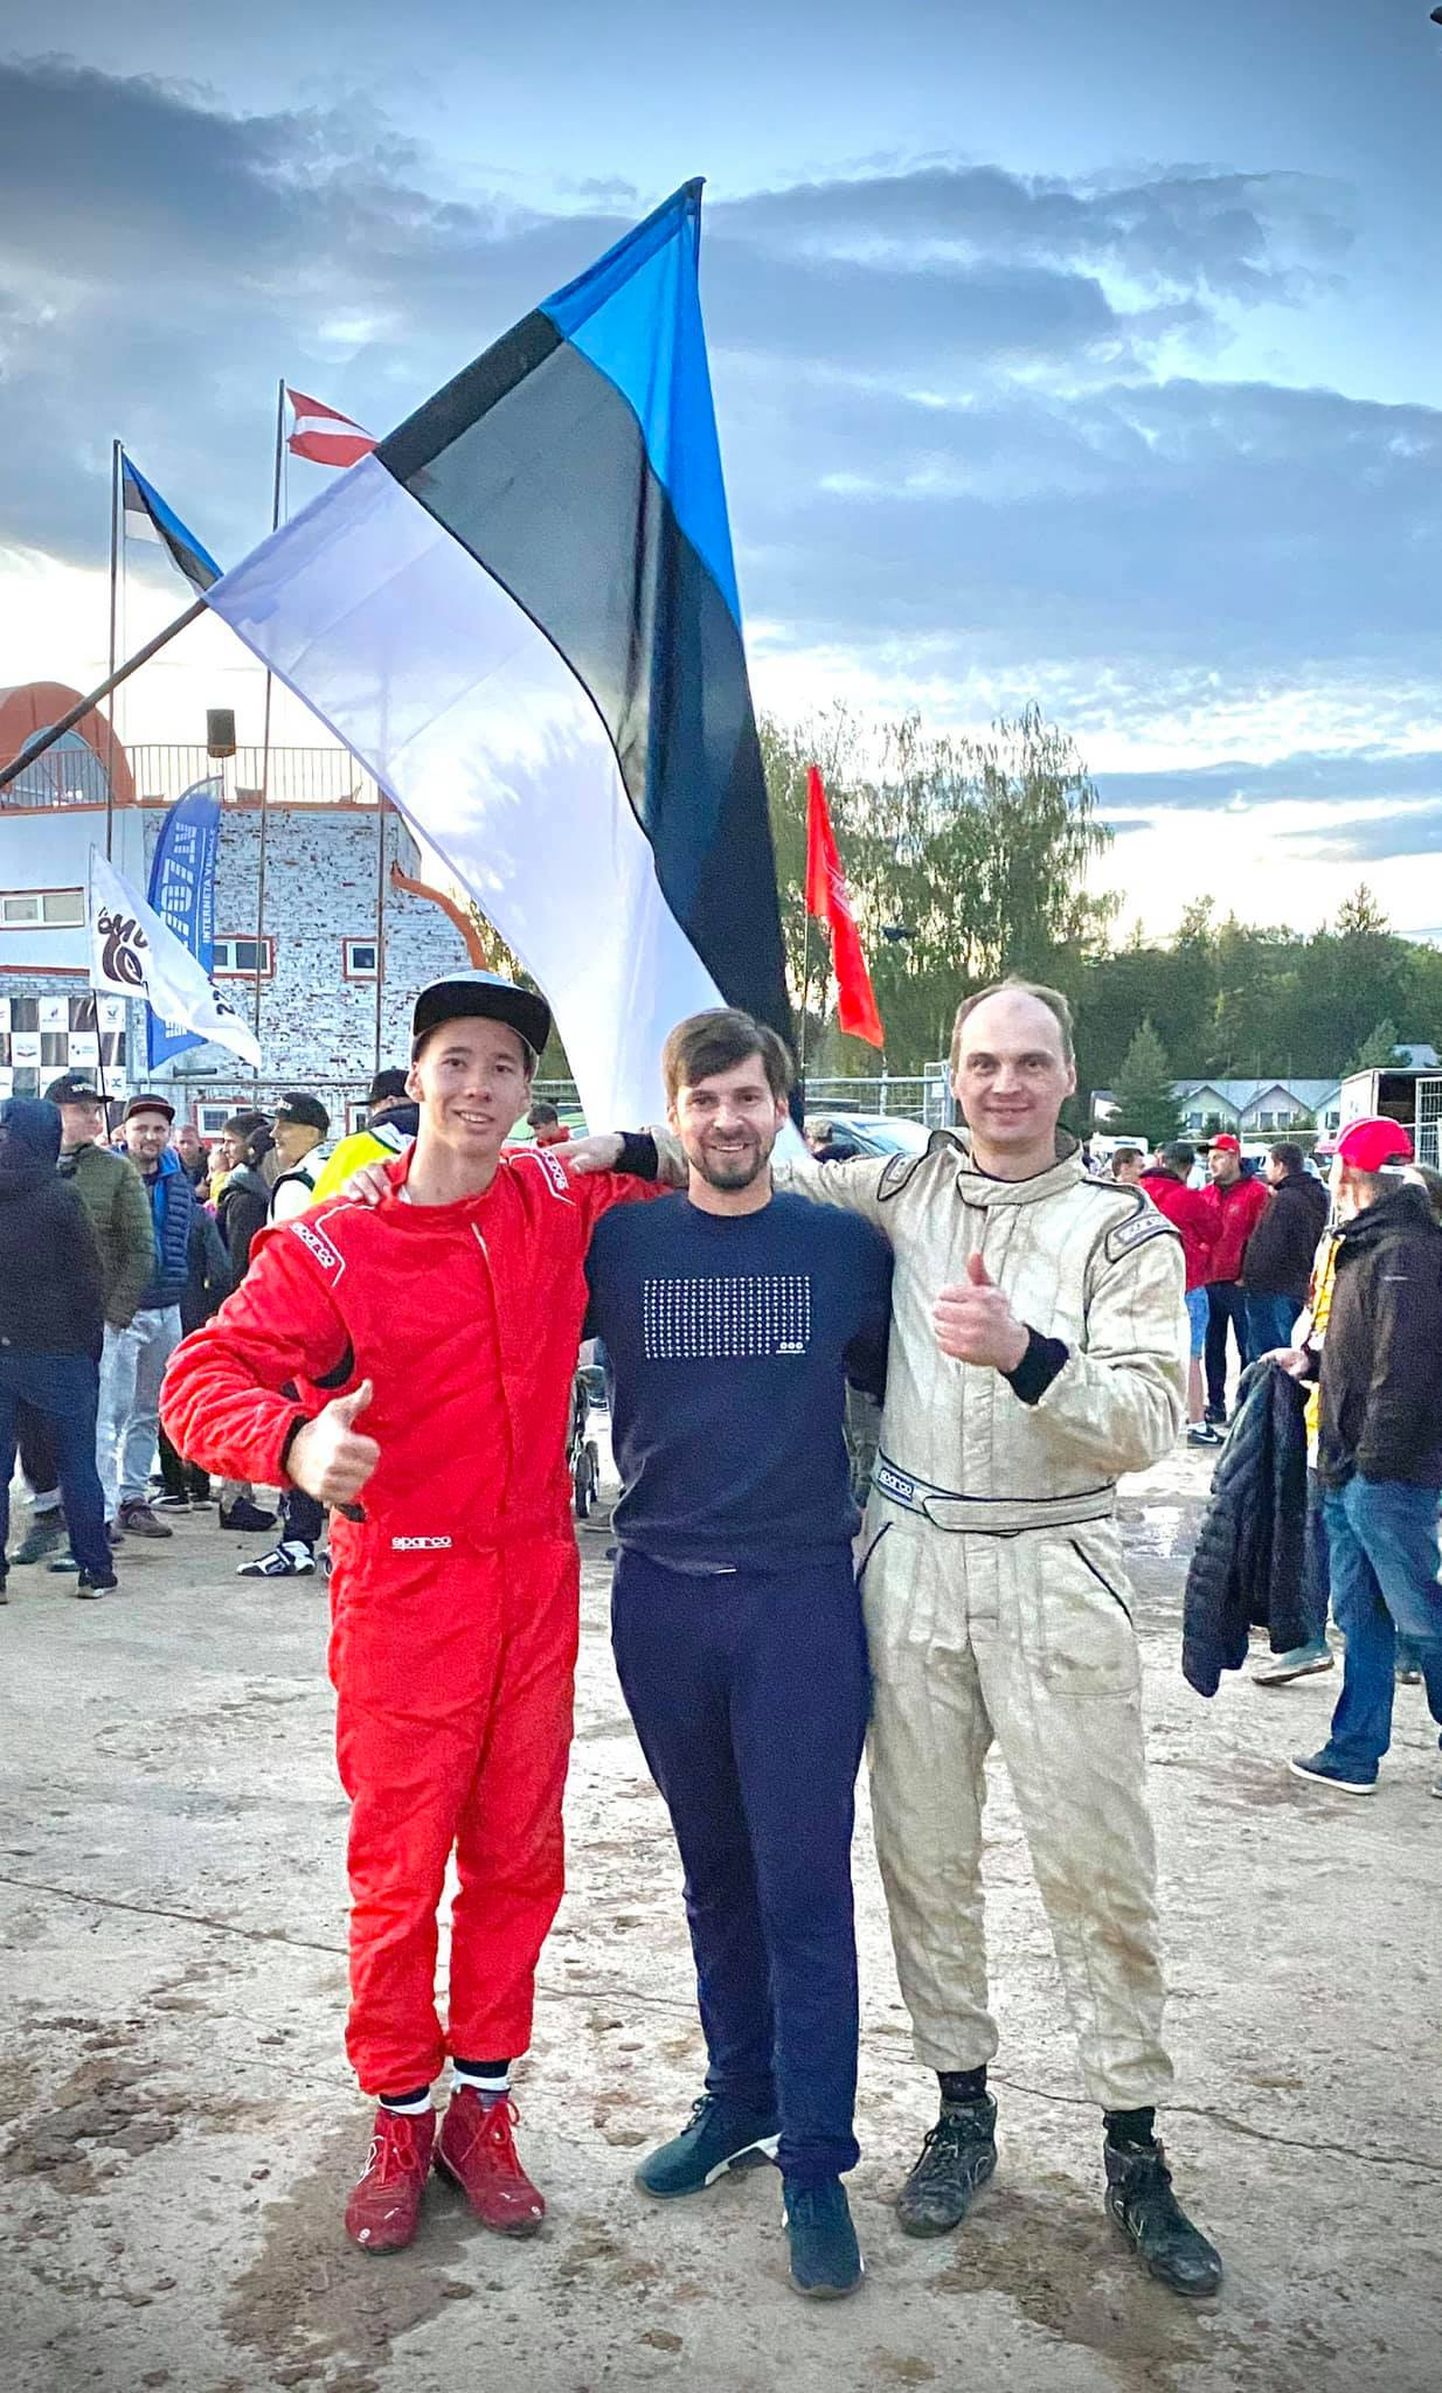 Lätis Bauska lähedal võidutsesid krossivõistlusel tõrvakad Maiko Tamm (vasakul) ja Janar Kadak (paremal). Keskel Tõrva vallavanem Maido Ruusmann.